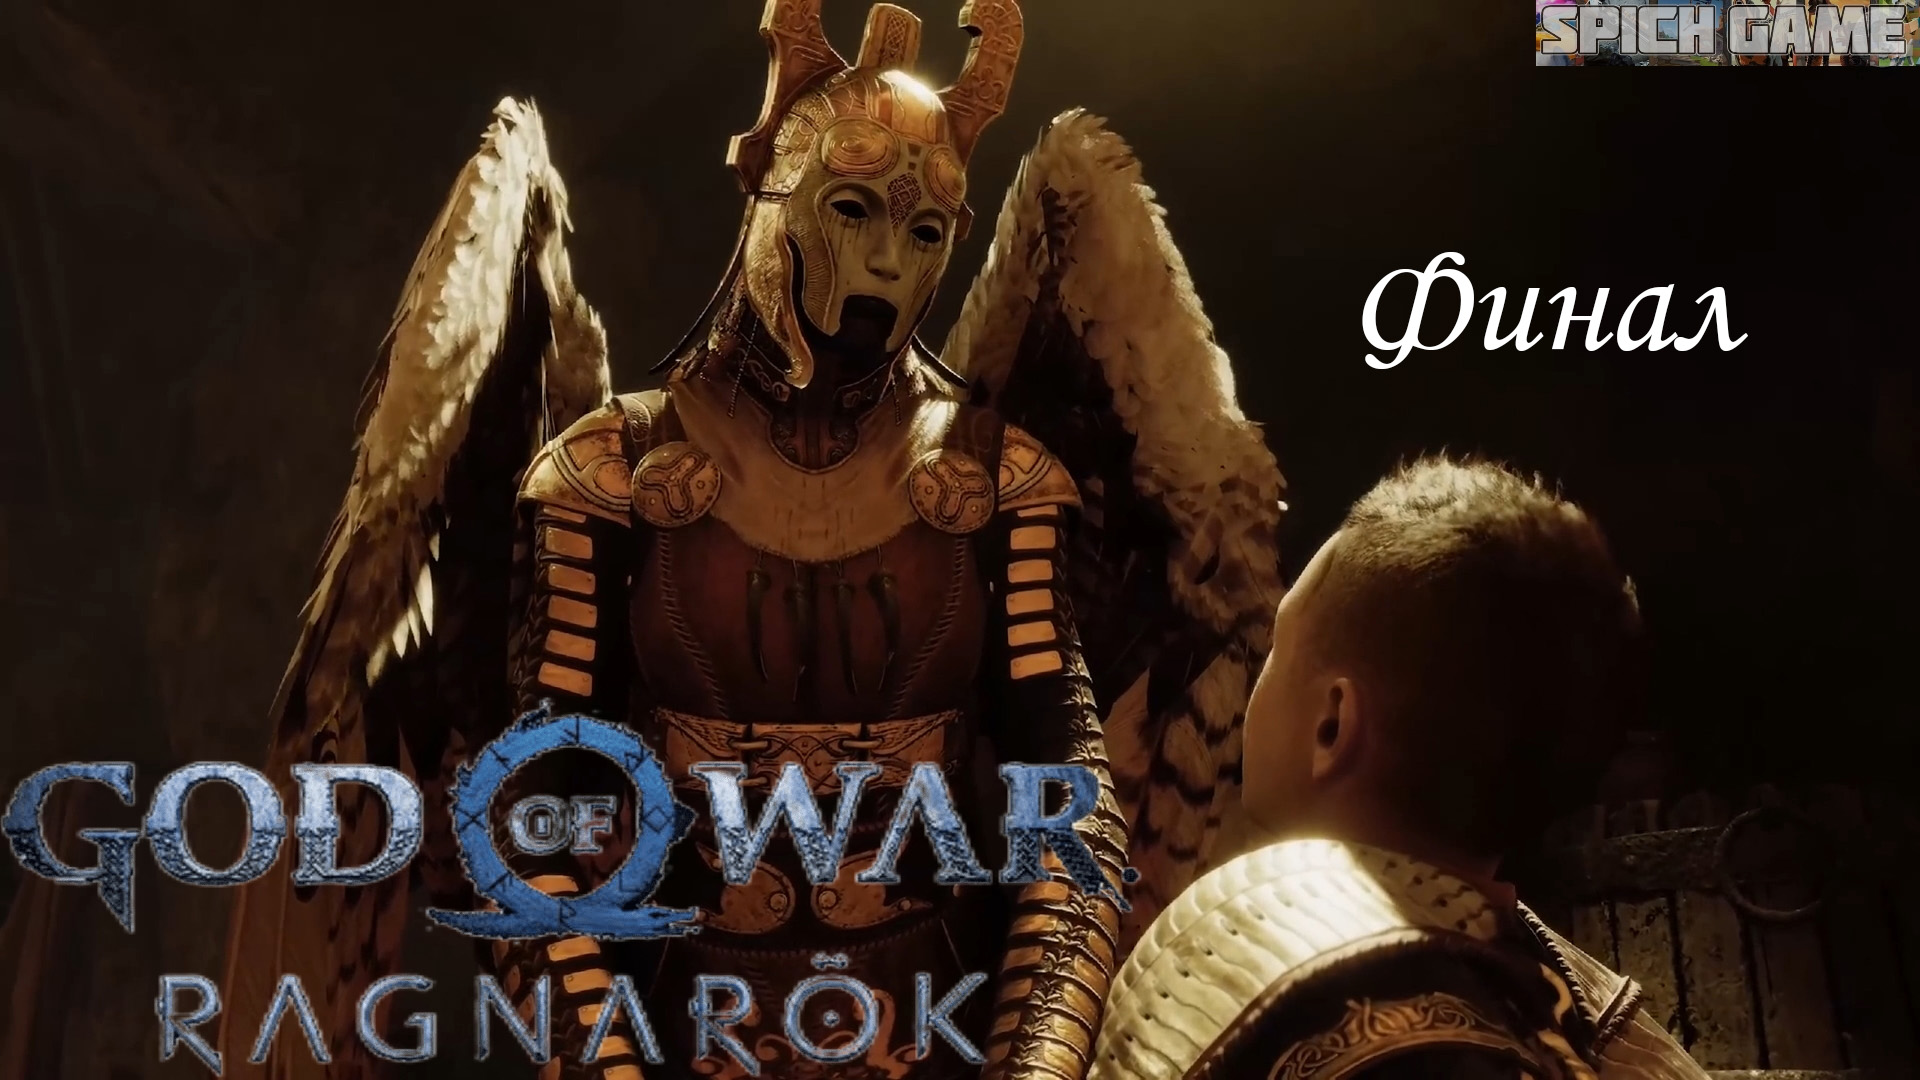 God of War Ragnarok Игрофильм на русском ● Сюжет без лишнего геймплея ● SpiCH GAME ФИНАЛ